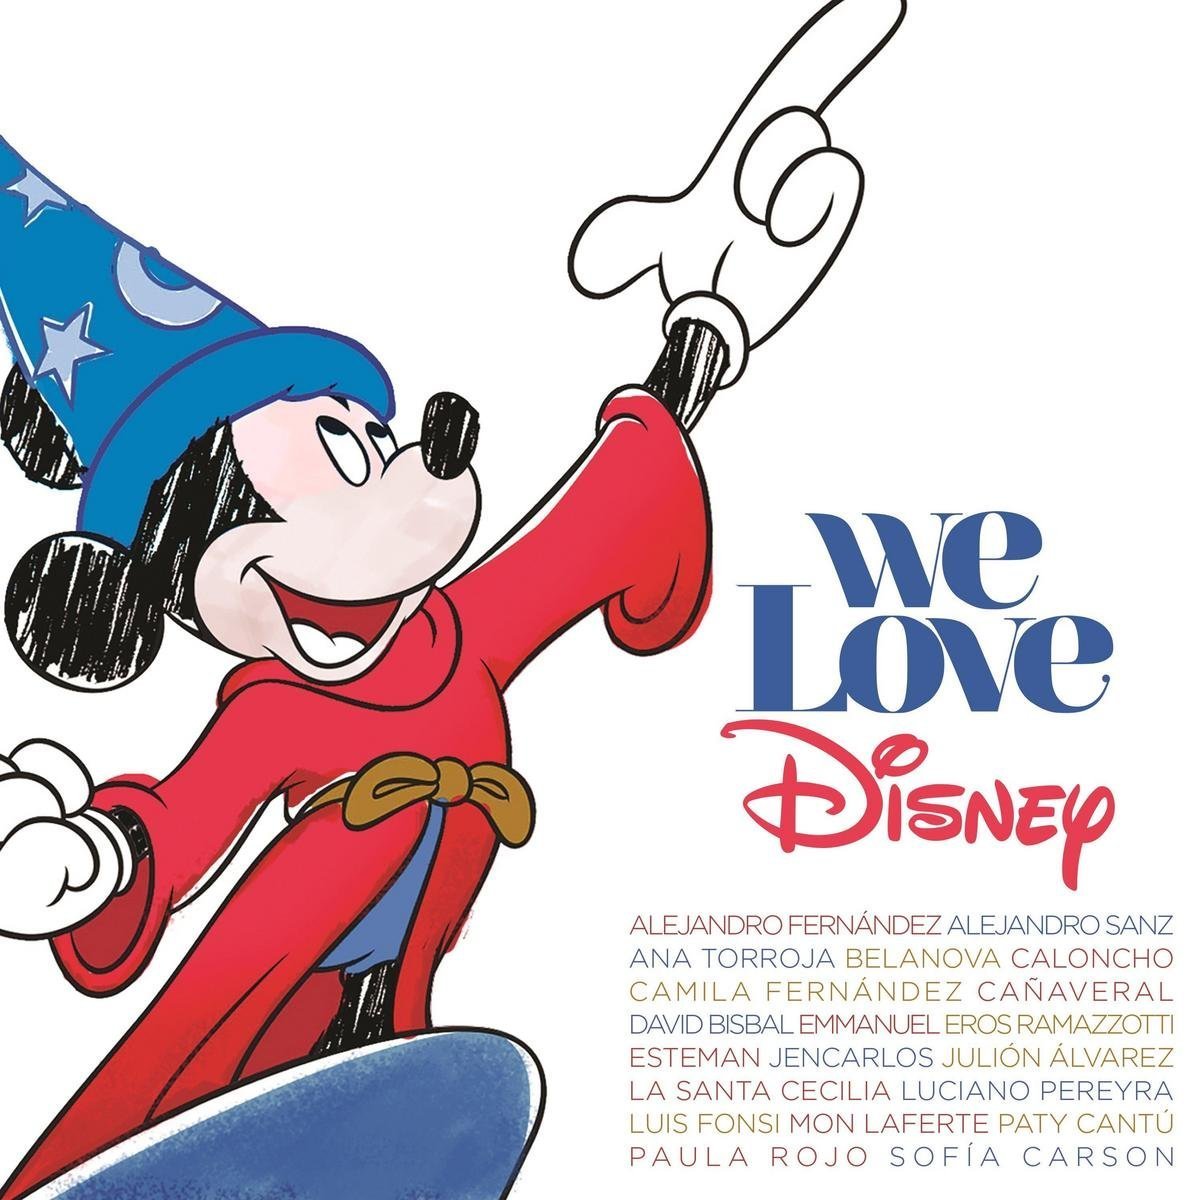 We love Disney | Alejandro Fernandez